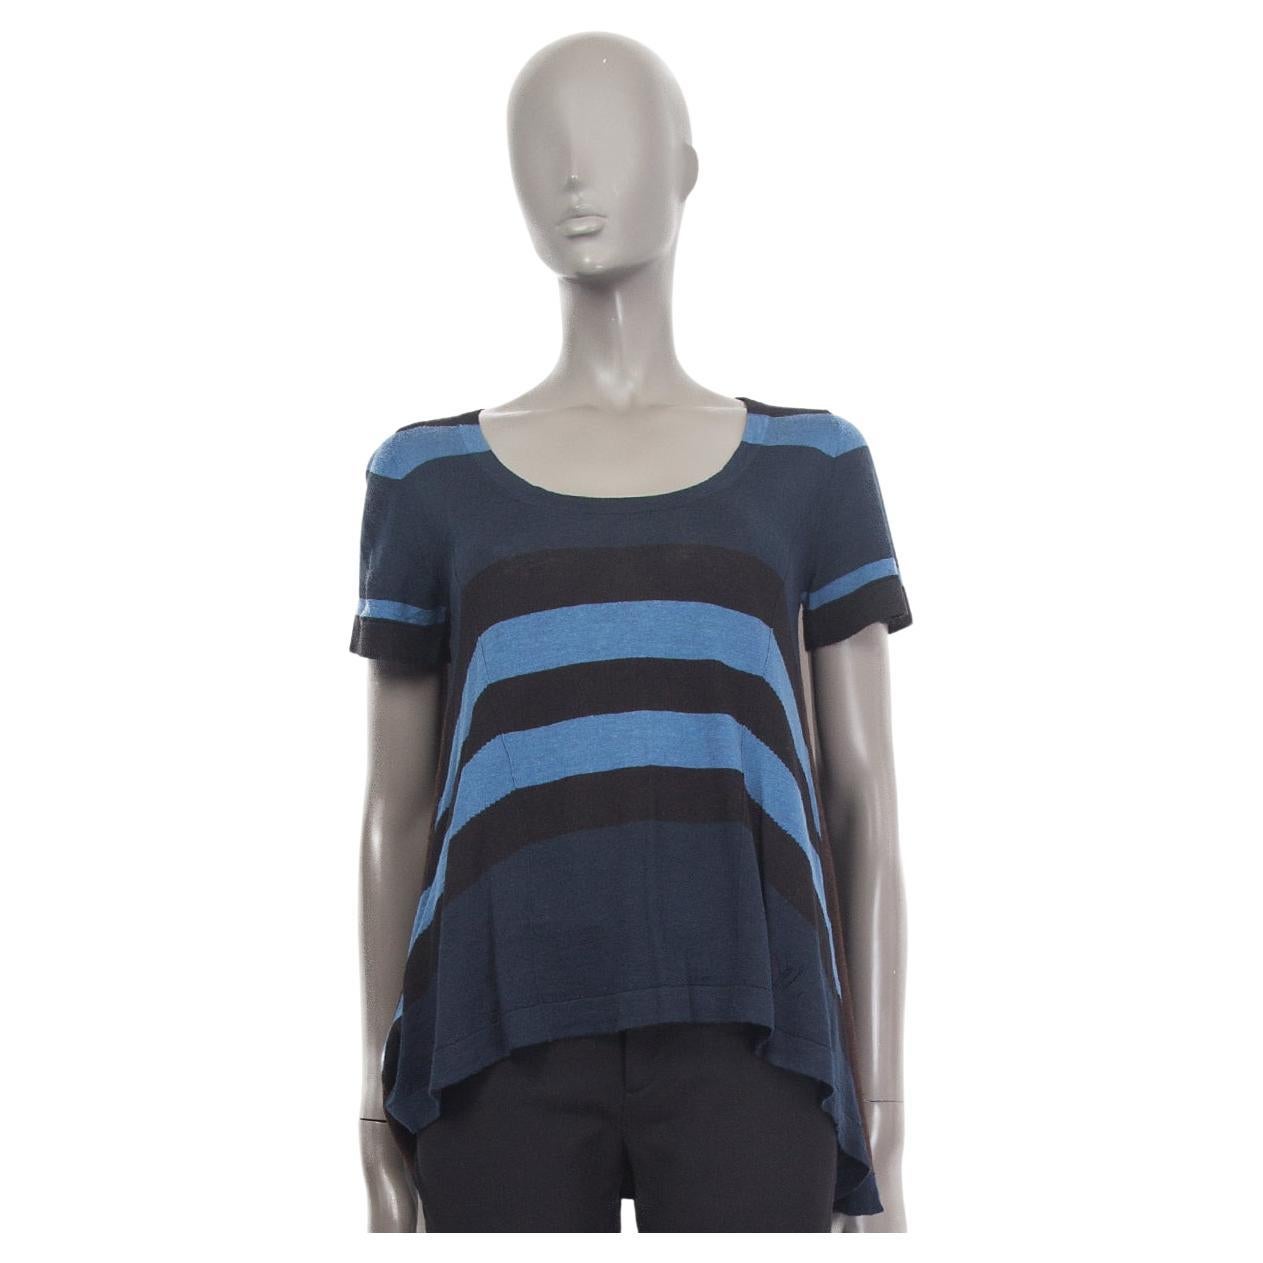 LOUIS VUITTON - T-shirt en maille plissée en cachemire et soie bleu, noir et marron, taille M